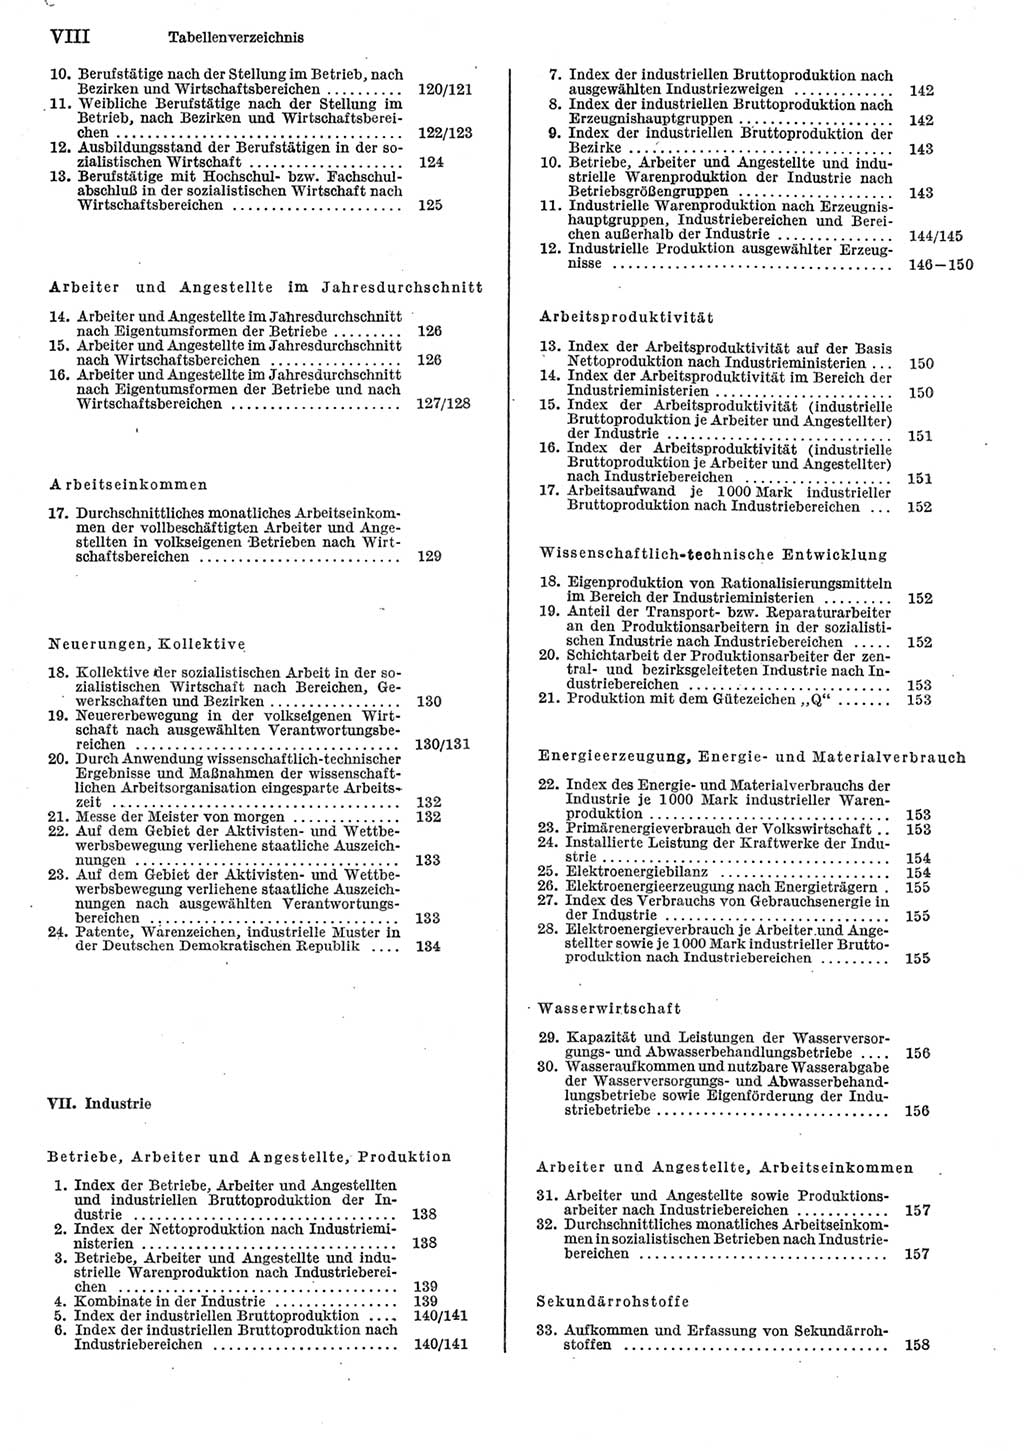 Statistisches Jahrbuch der Deutschen Demokratischen Republik (DDR) 1985, Seite 8 (Stat. Jb. DDR 1985, S. 8)